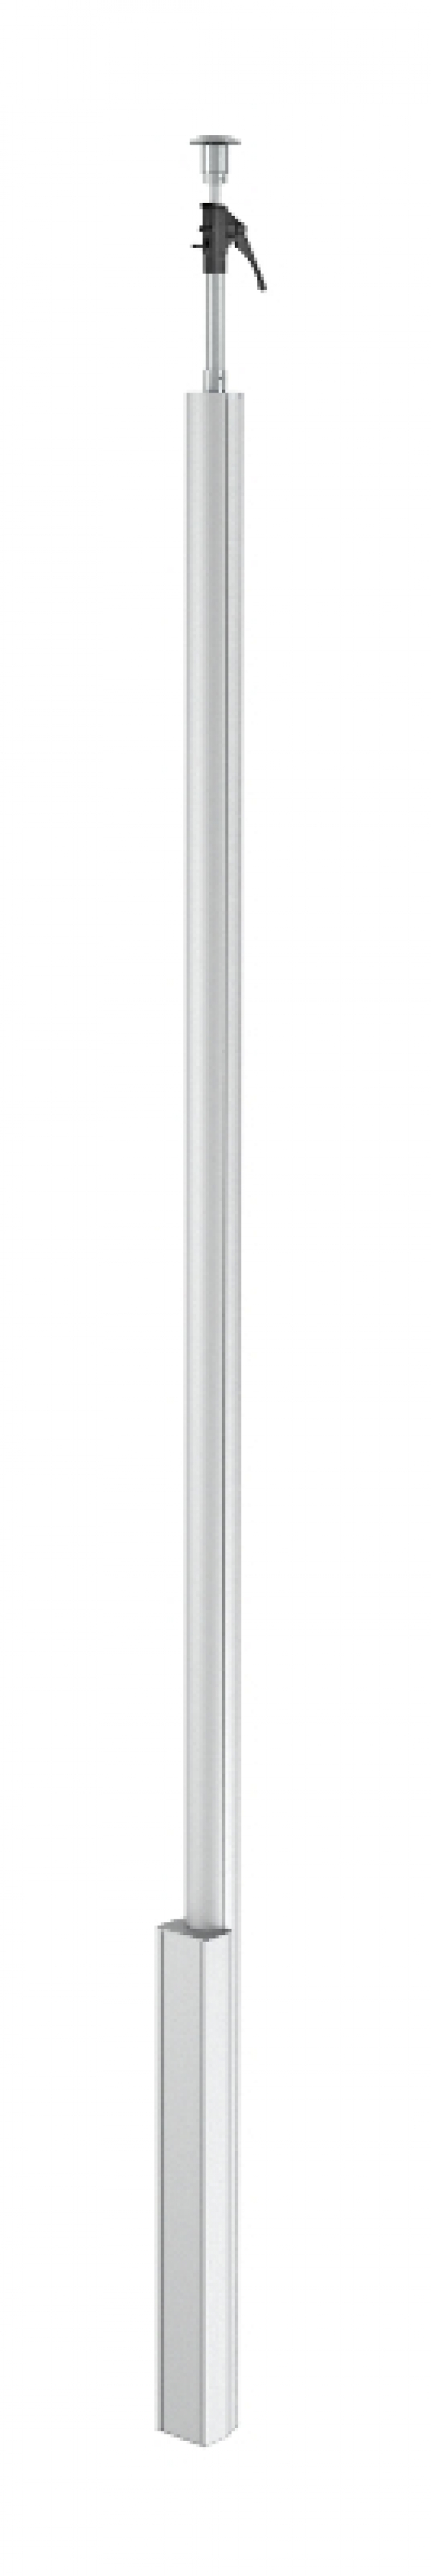 6289060 - OBO BETTERMANN Электромонтажная колонна 3,3-3,5 м 1-сторонняя 100x110x3000 мм (алюминий,белый) (ISS110100RRW).